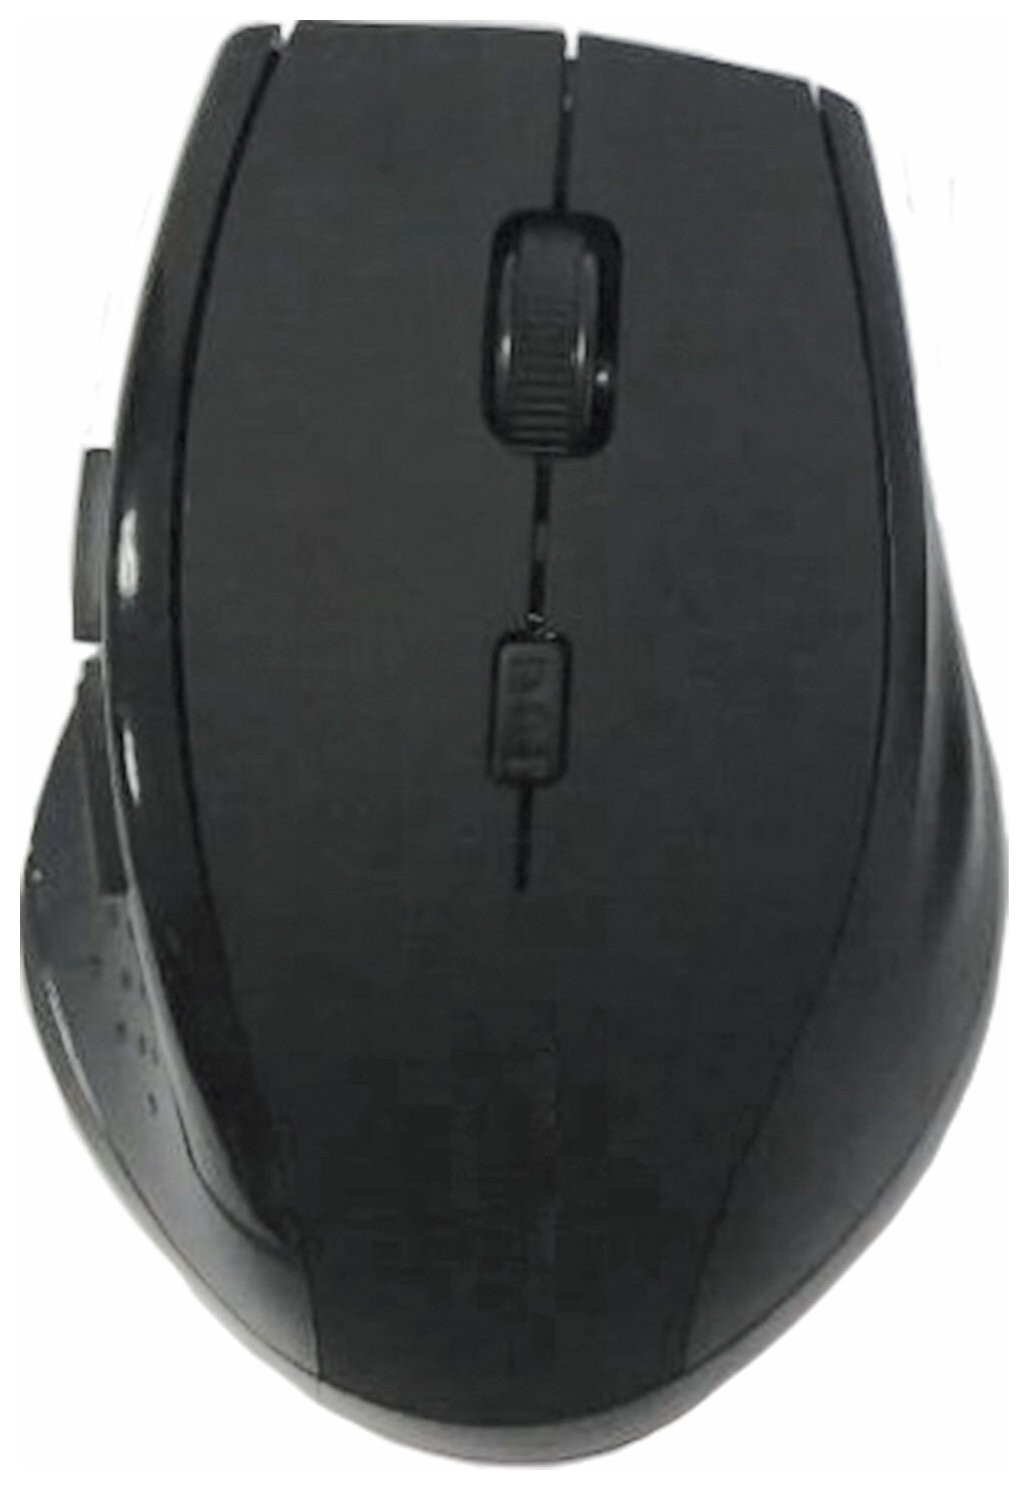 Мышь беспроводная бесшумная С аккумулятором Sonnen Wm-2241, 3 кнопки+1 колесо-кнопка, черная, 513053